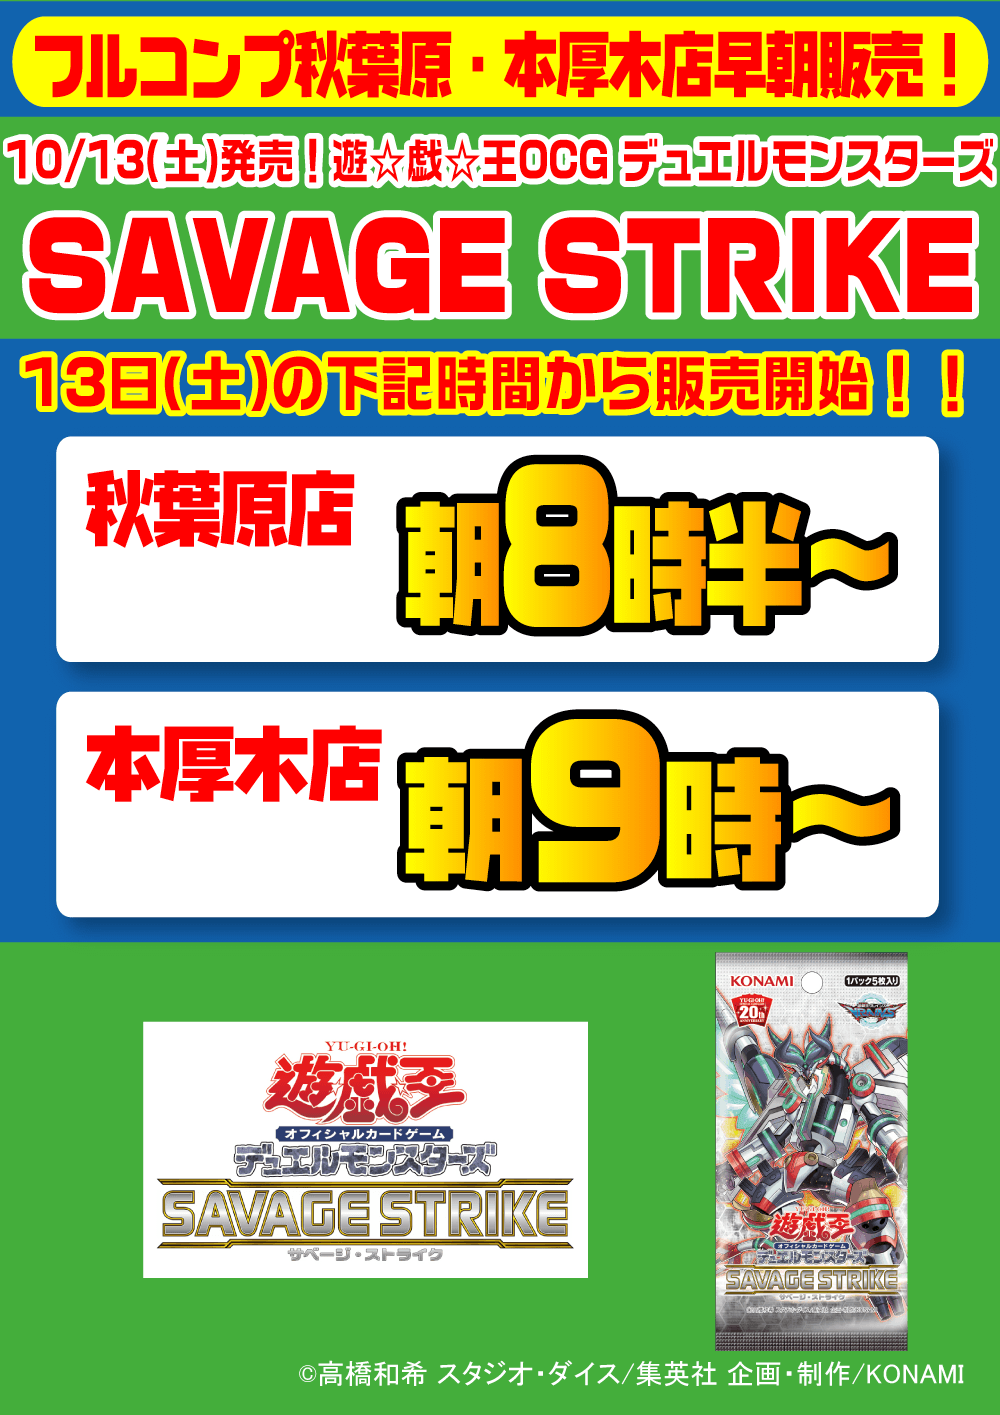 遊戯王「SAVAGE STRIKE」早朝販売2